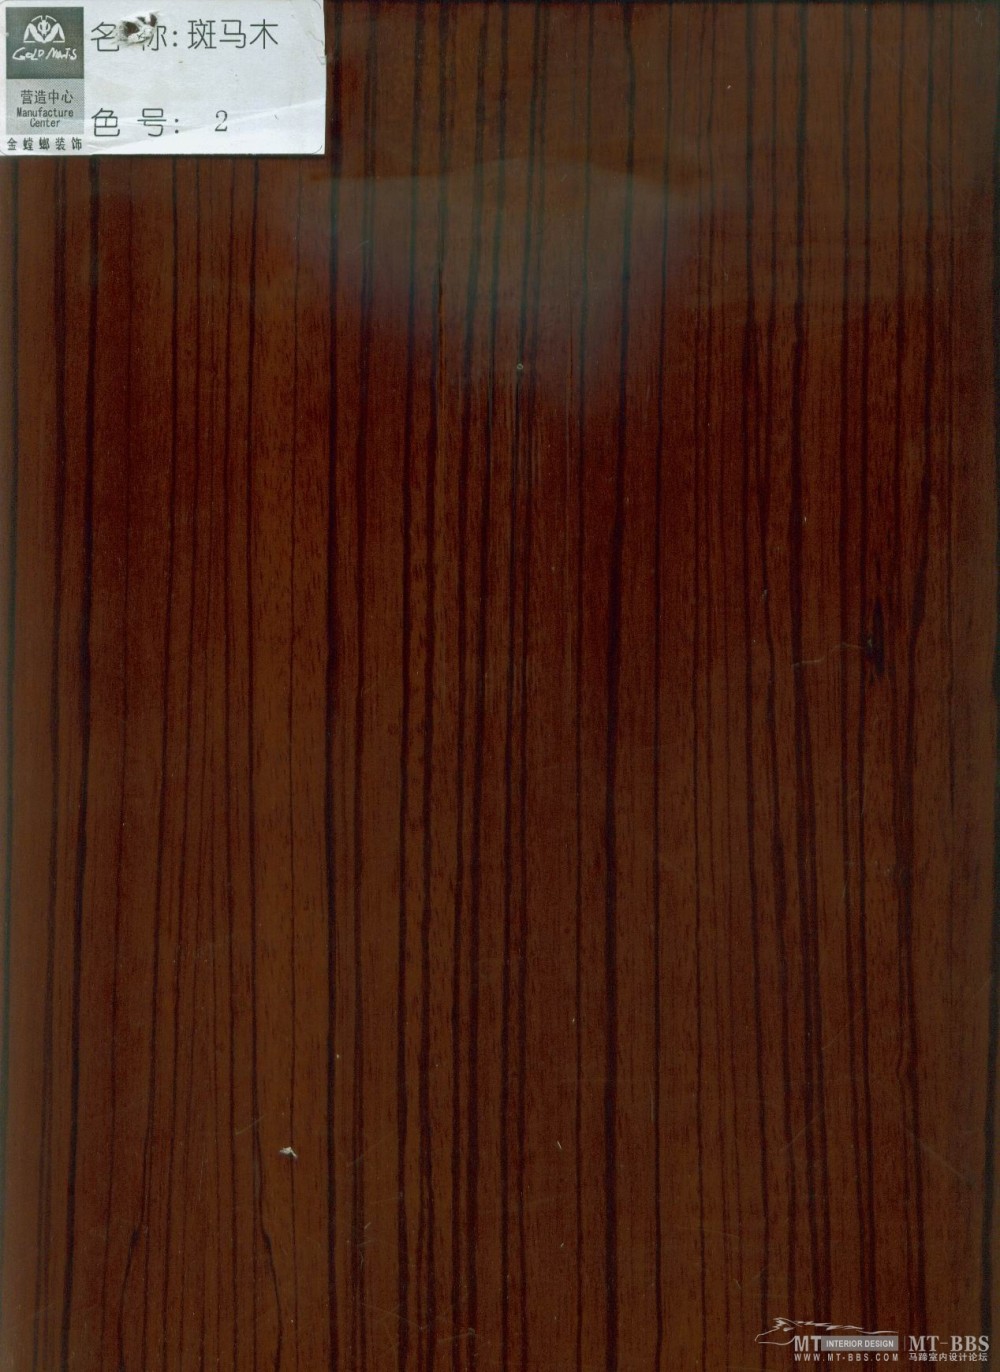 金螳螂--金螳螂装饰营造中心木材色板_斑马木2号色.jpg